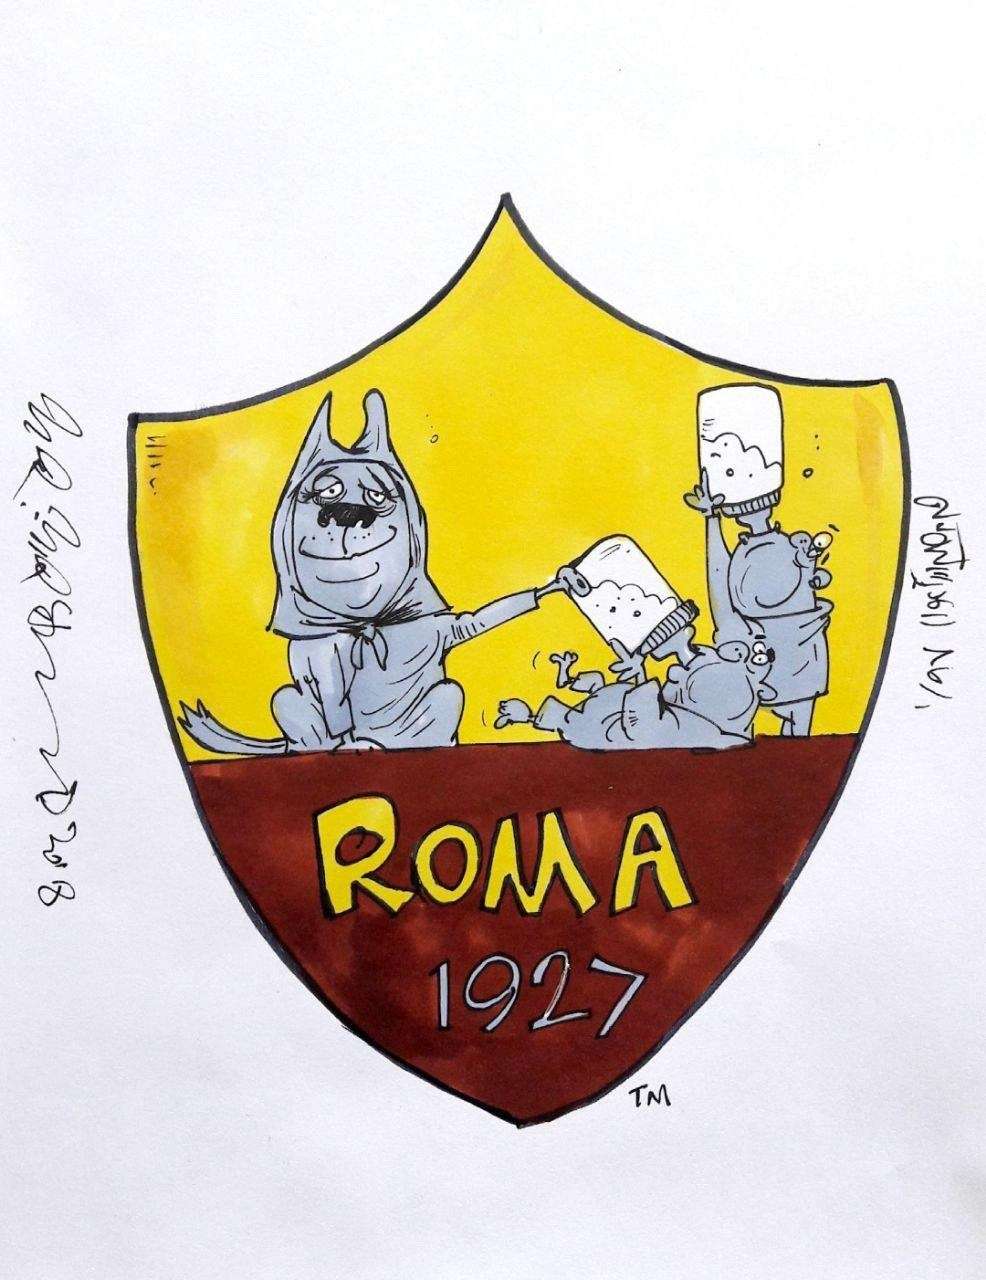 کاریکاتور لوگو باشگاه رم,کاریکاتور,عکس کاریکاتور,کاریکاتور ورزشی